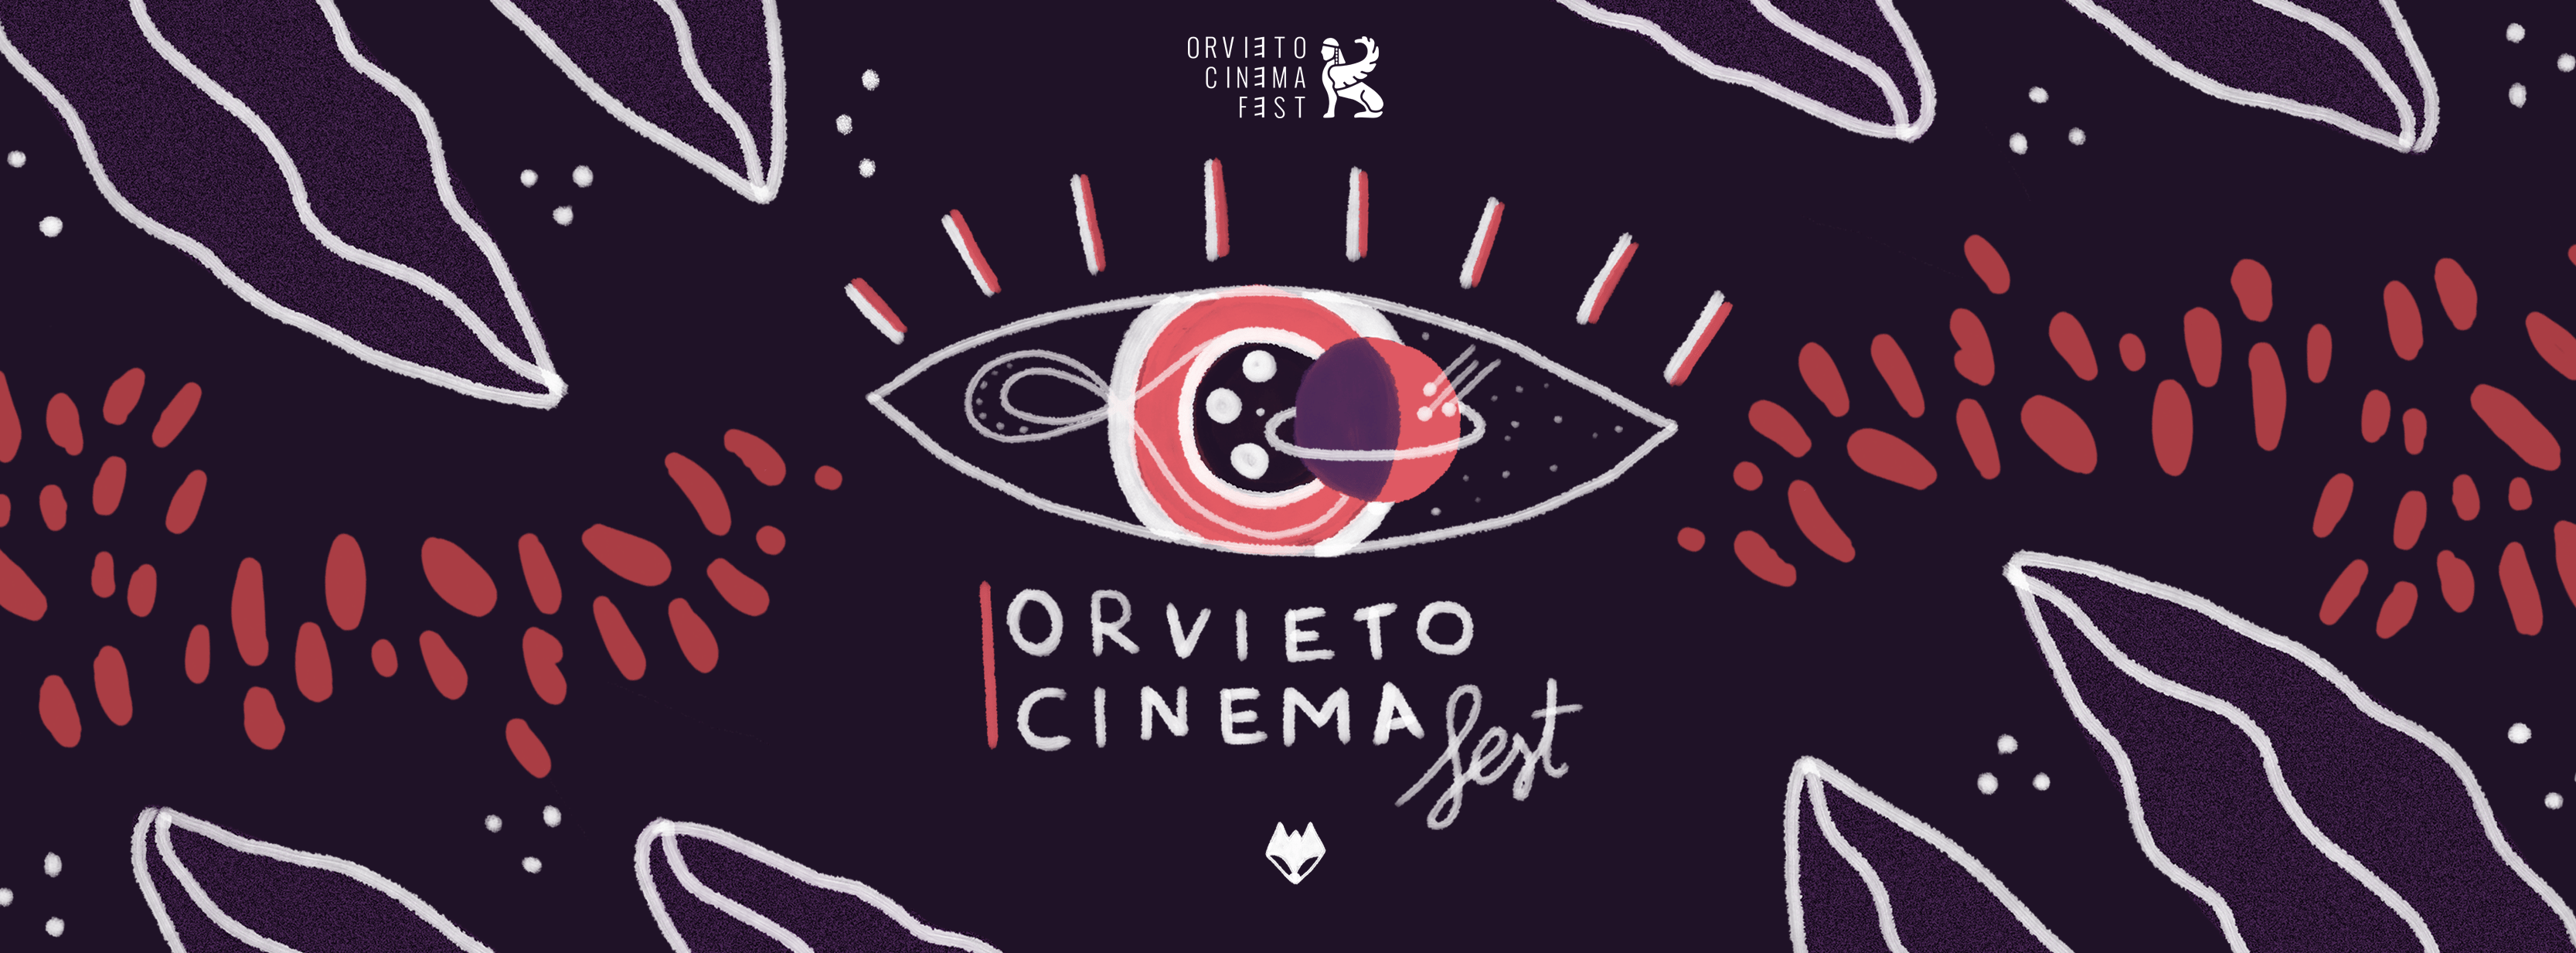 Orvieto Cinema Fest – La cerimonia di premiazione dei corti finalisti